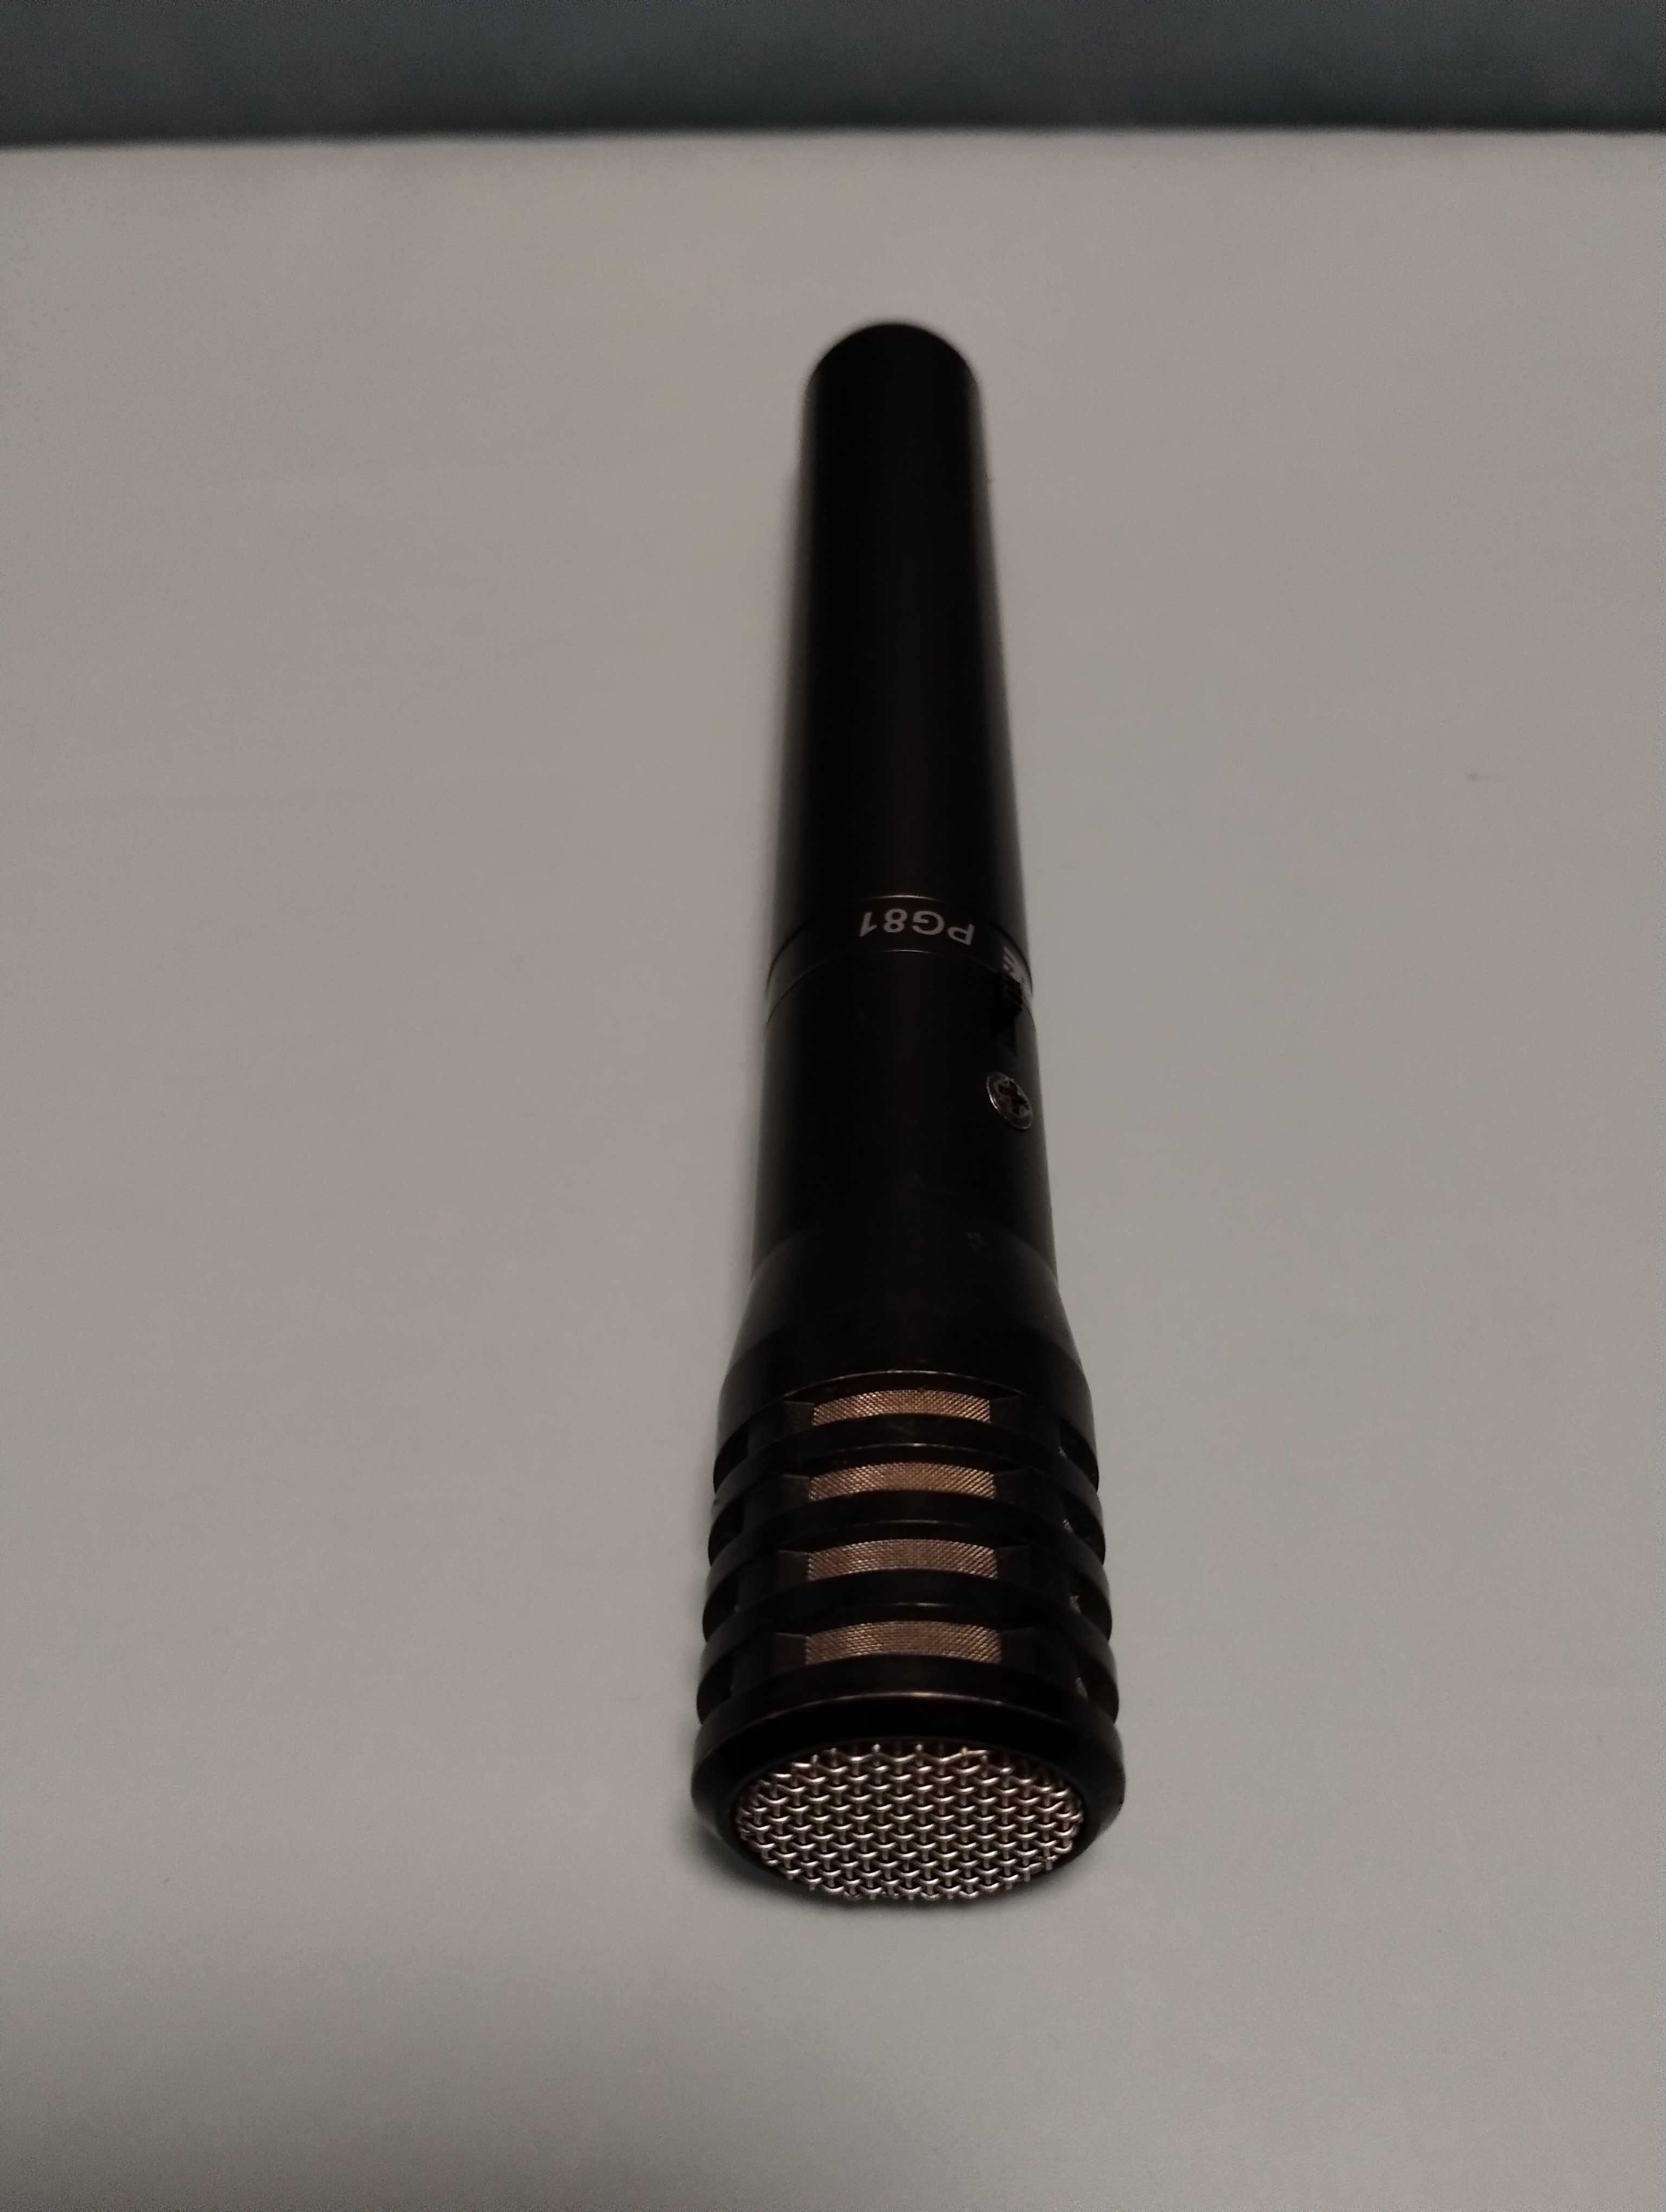 Mikrofon Shure PG81, pojemnościowy